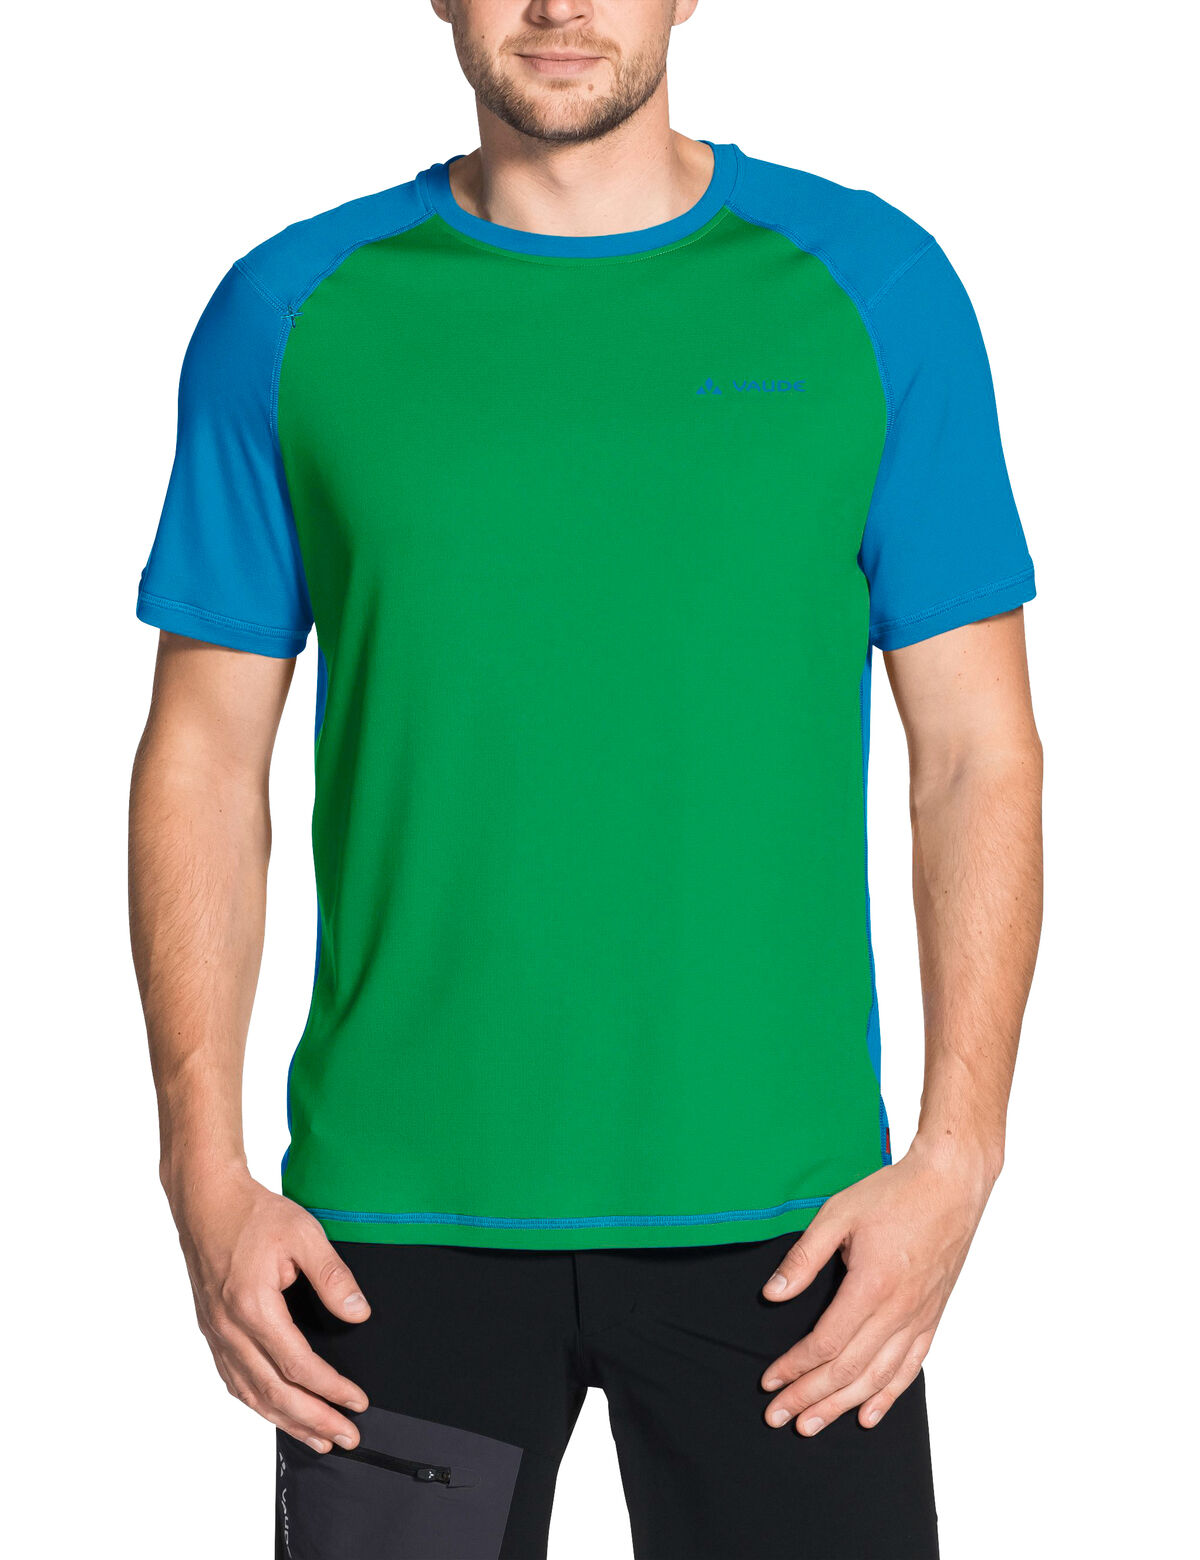 Vaude Hallett Shirt - T-shirt - Men's